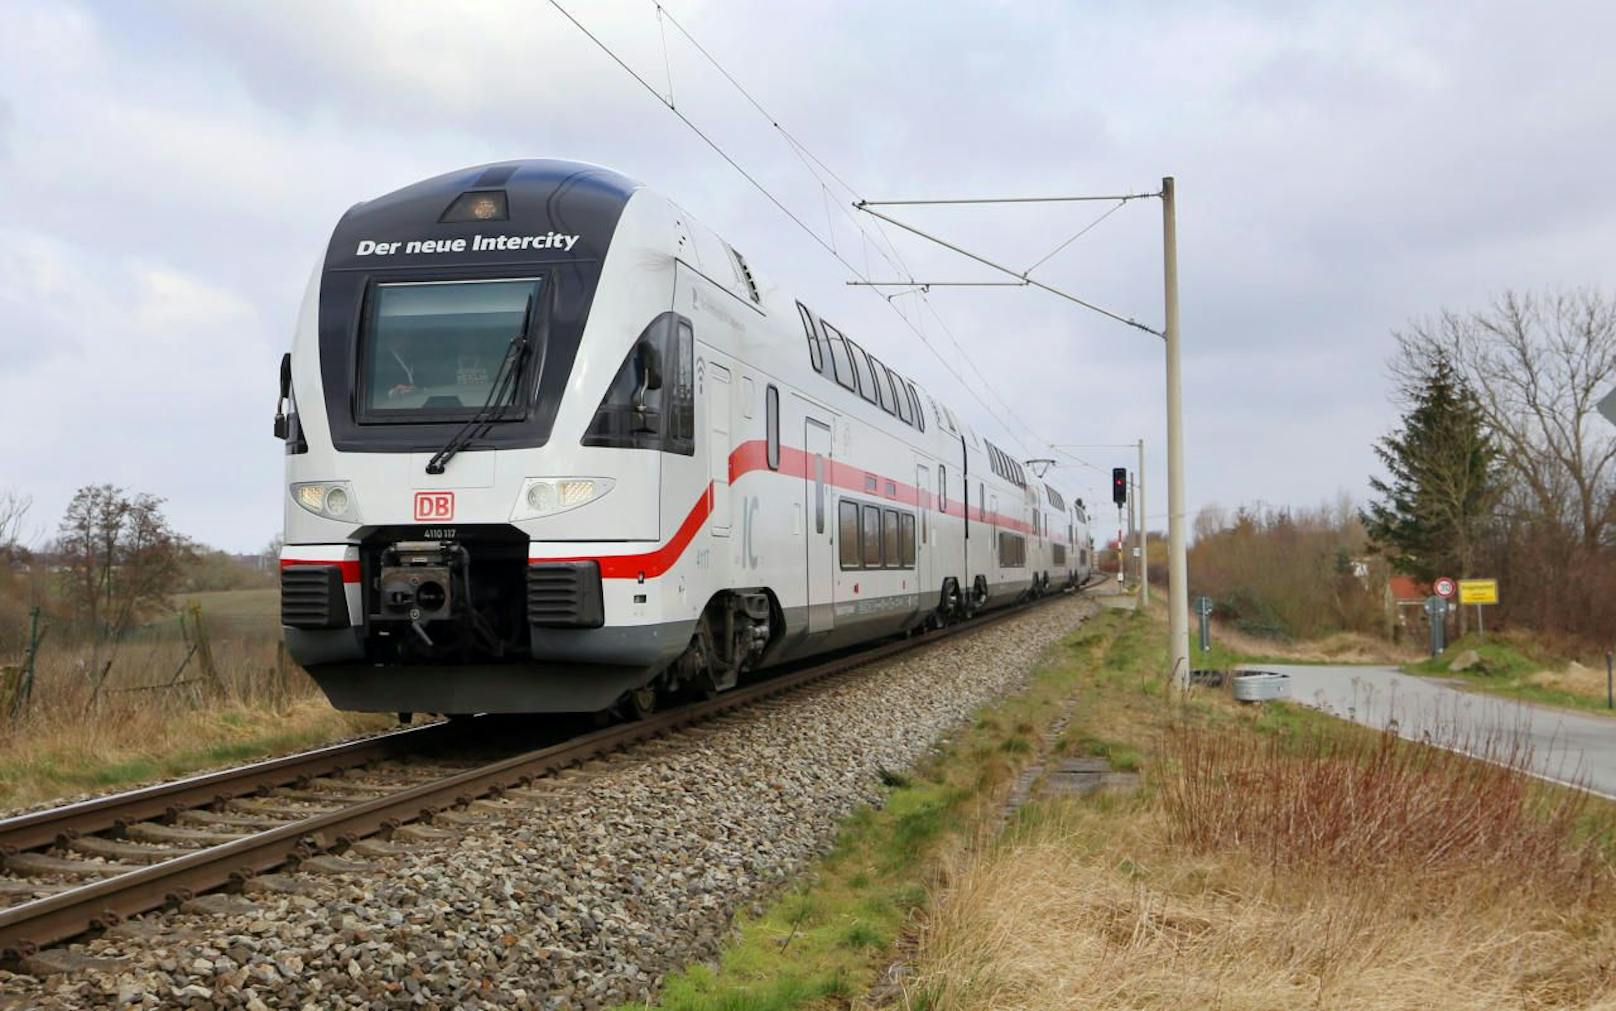 Ein neuer Intercity Doppeldecker-Zug der Deutschen Bahn. Dieser verkehrt ab März 2020 auf der Strecke Rostock-Berlin.